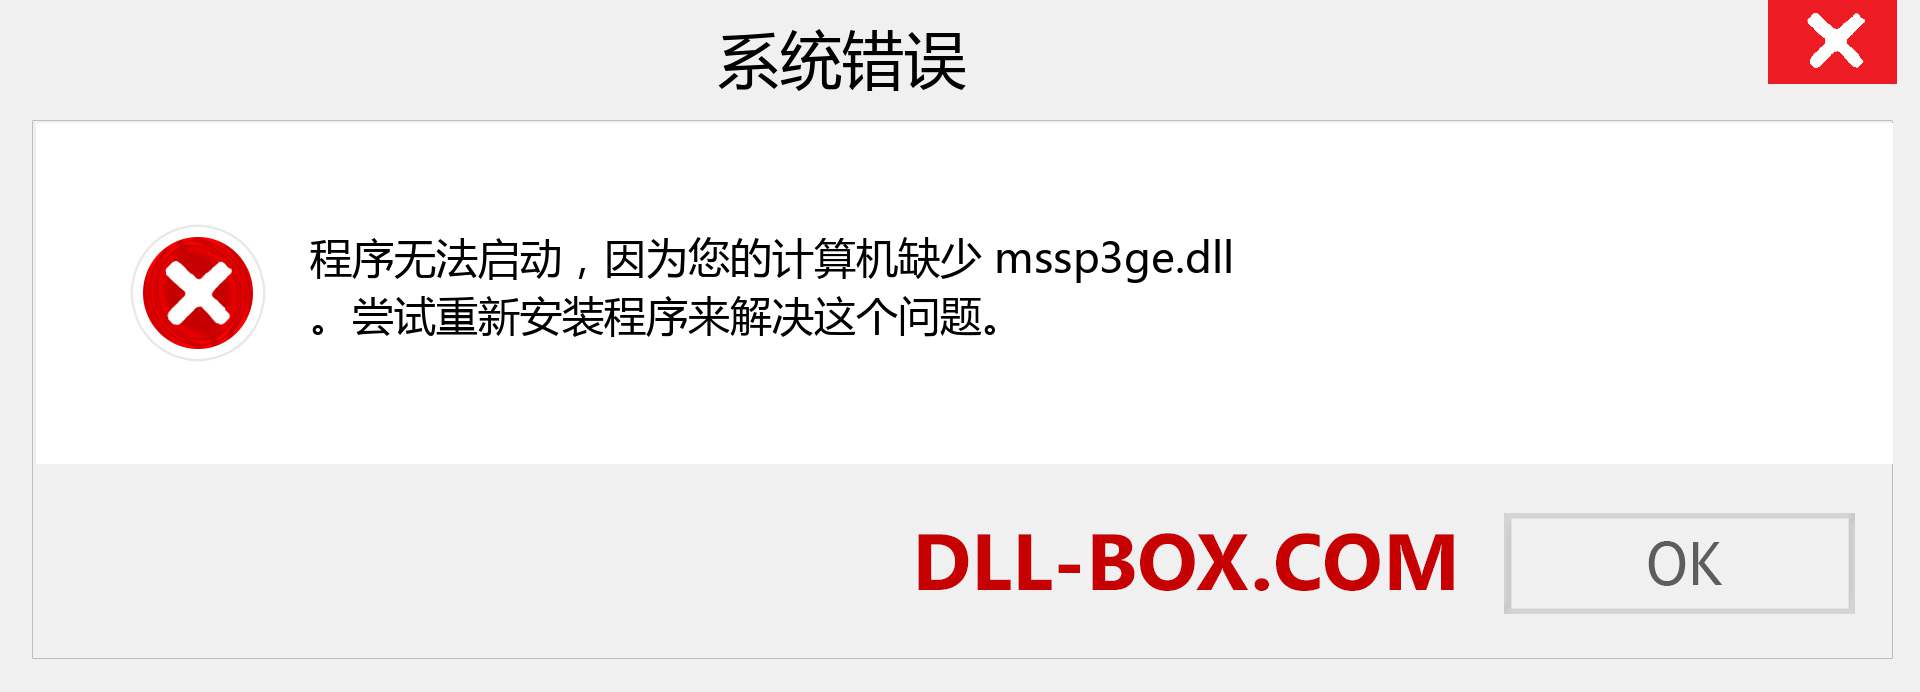 mssp3ge.dll 文件丢失？。 适用于 Windows 7、8、10 的下载 - 修复 Windows、照片、图像上的 mssp3ge dll 丢失错误